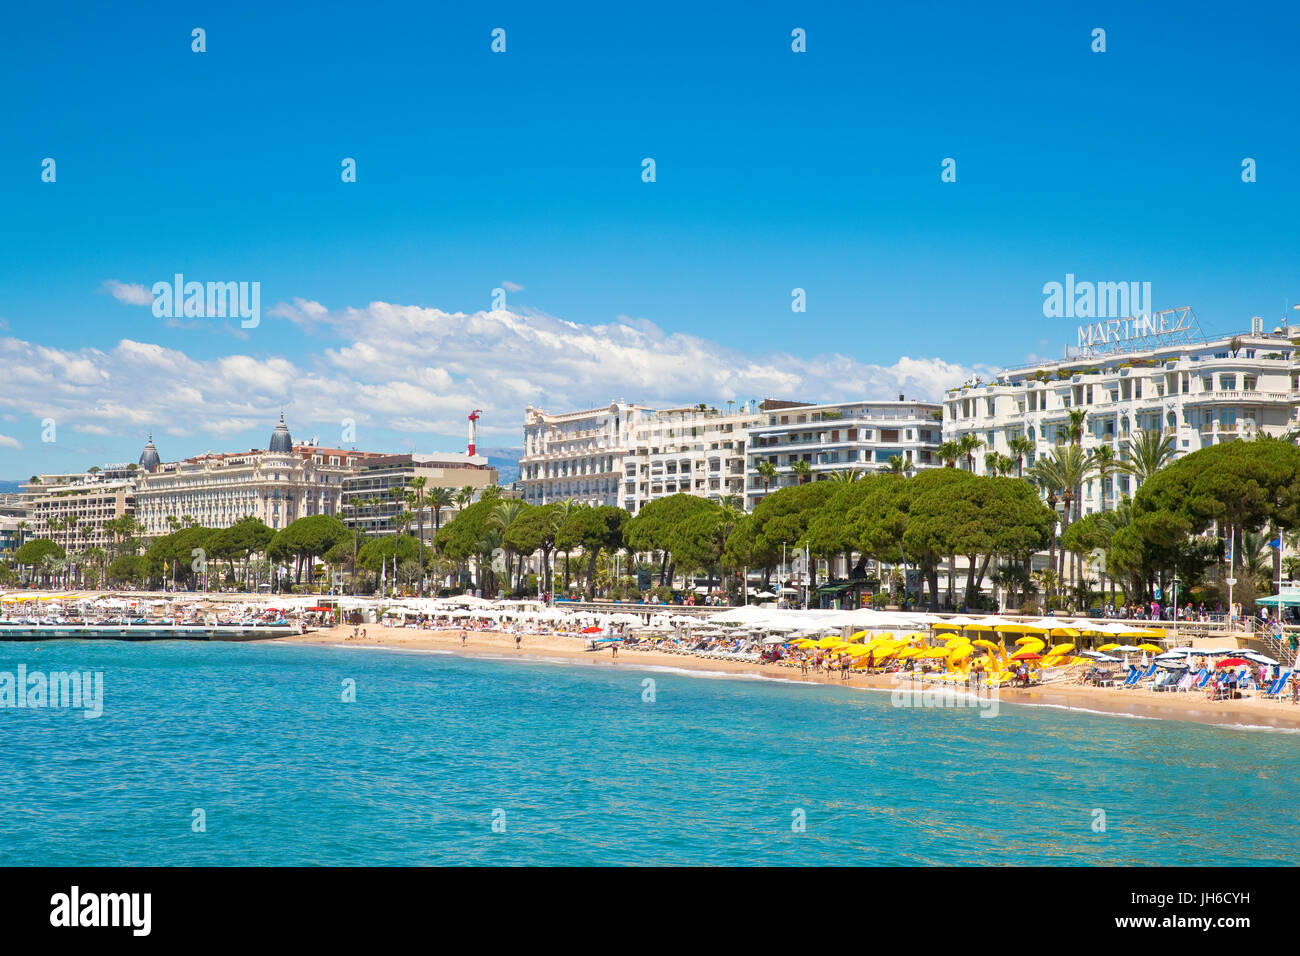 Promenade de la Croisette, Cannes, France with the famous hotel Carlton ...